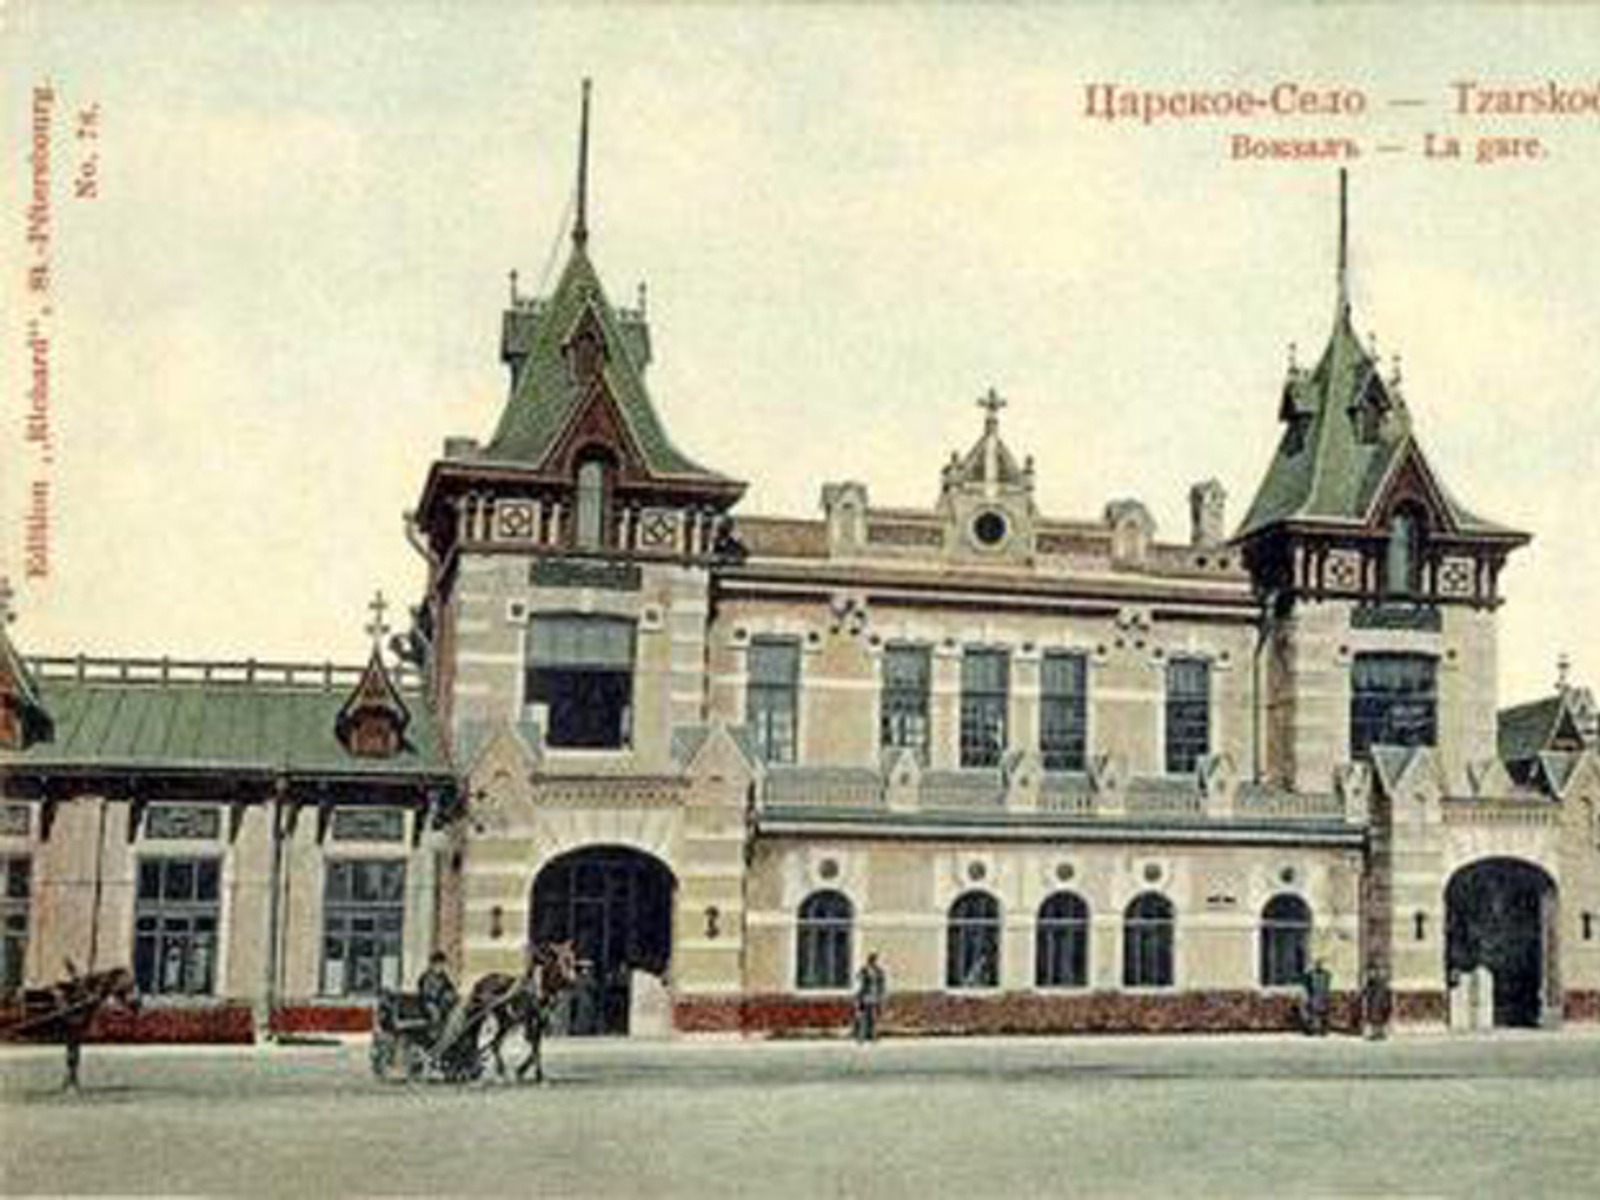 Старый вокзал Царского Села  